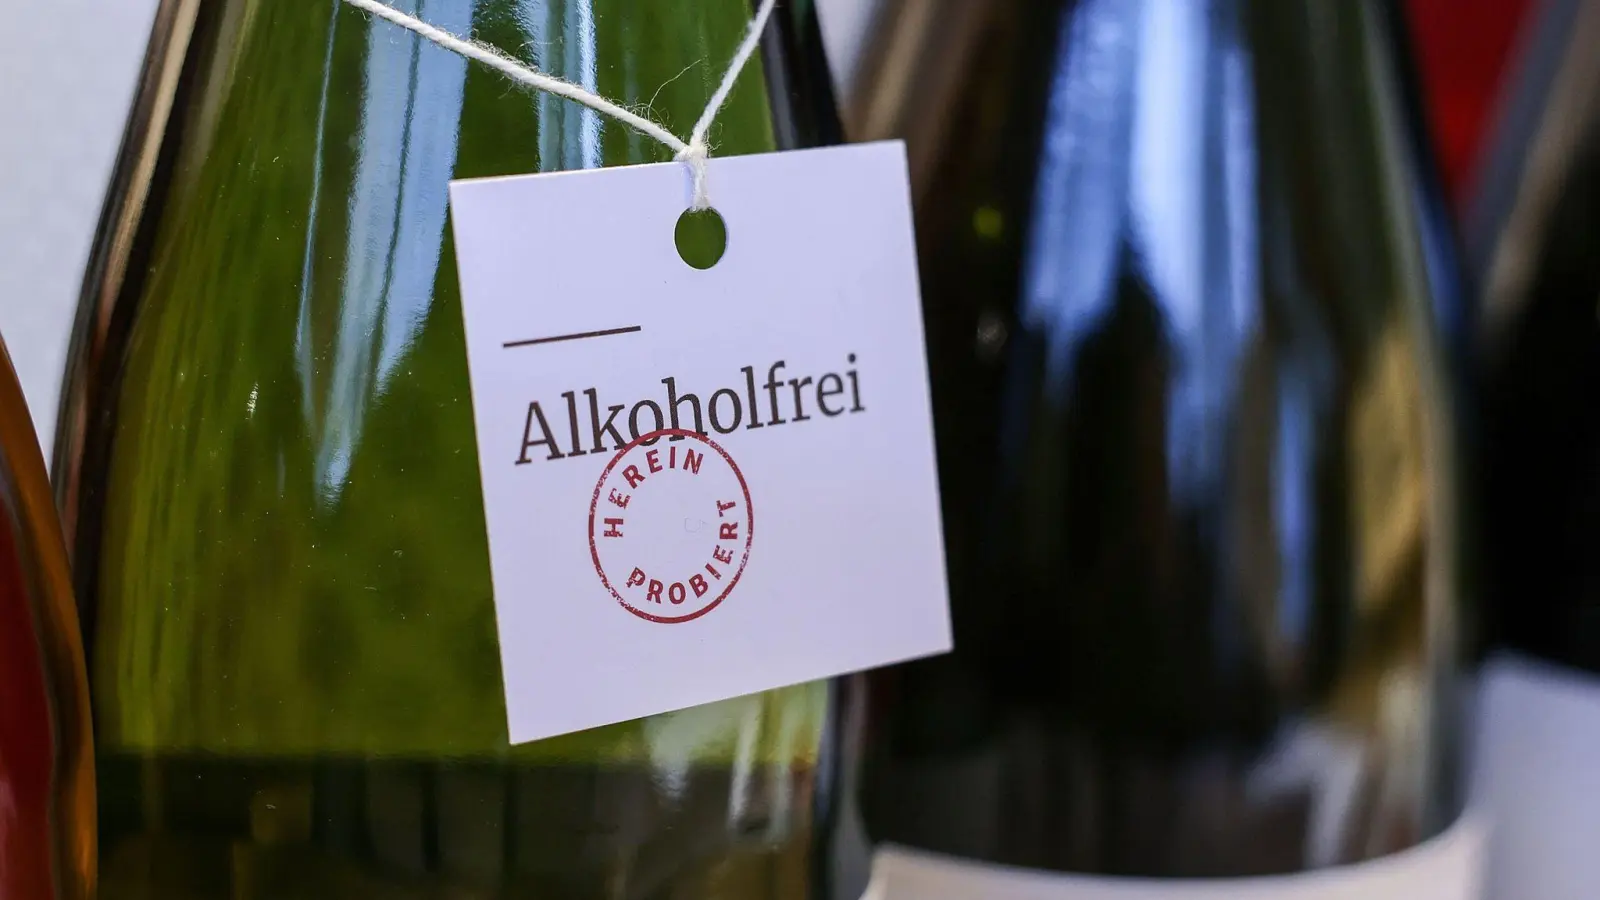 Immer mehr Weingüter, Winzergenossenschaften und Handelskellereien bieten entalkoholisierte Weine an. (Foto: Oliver Berg/dpa)